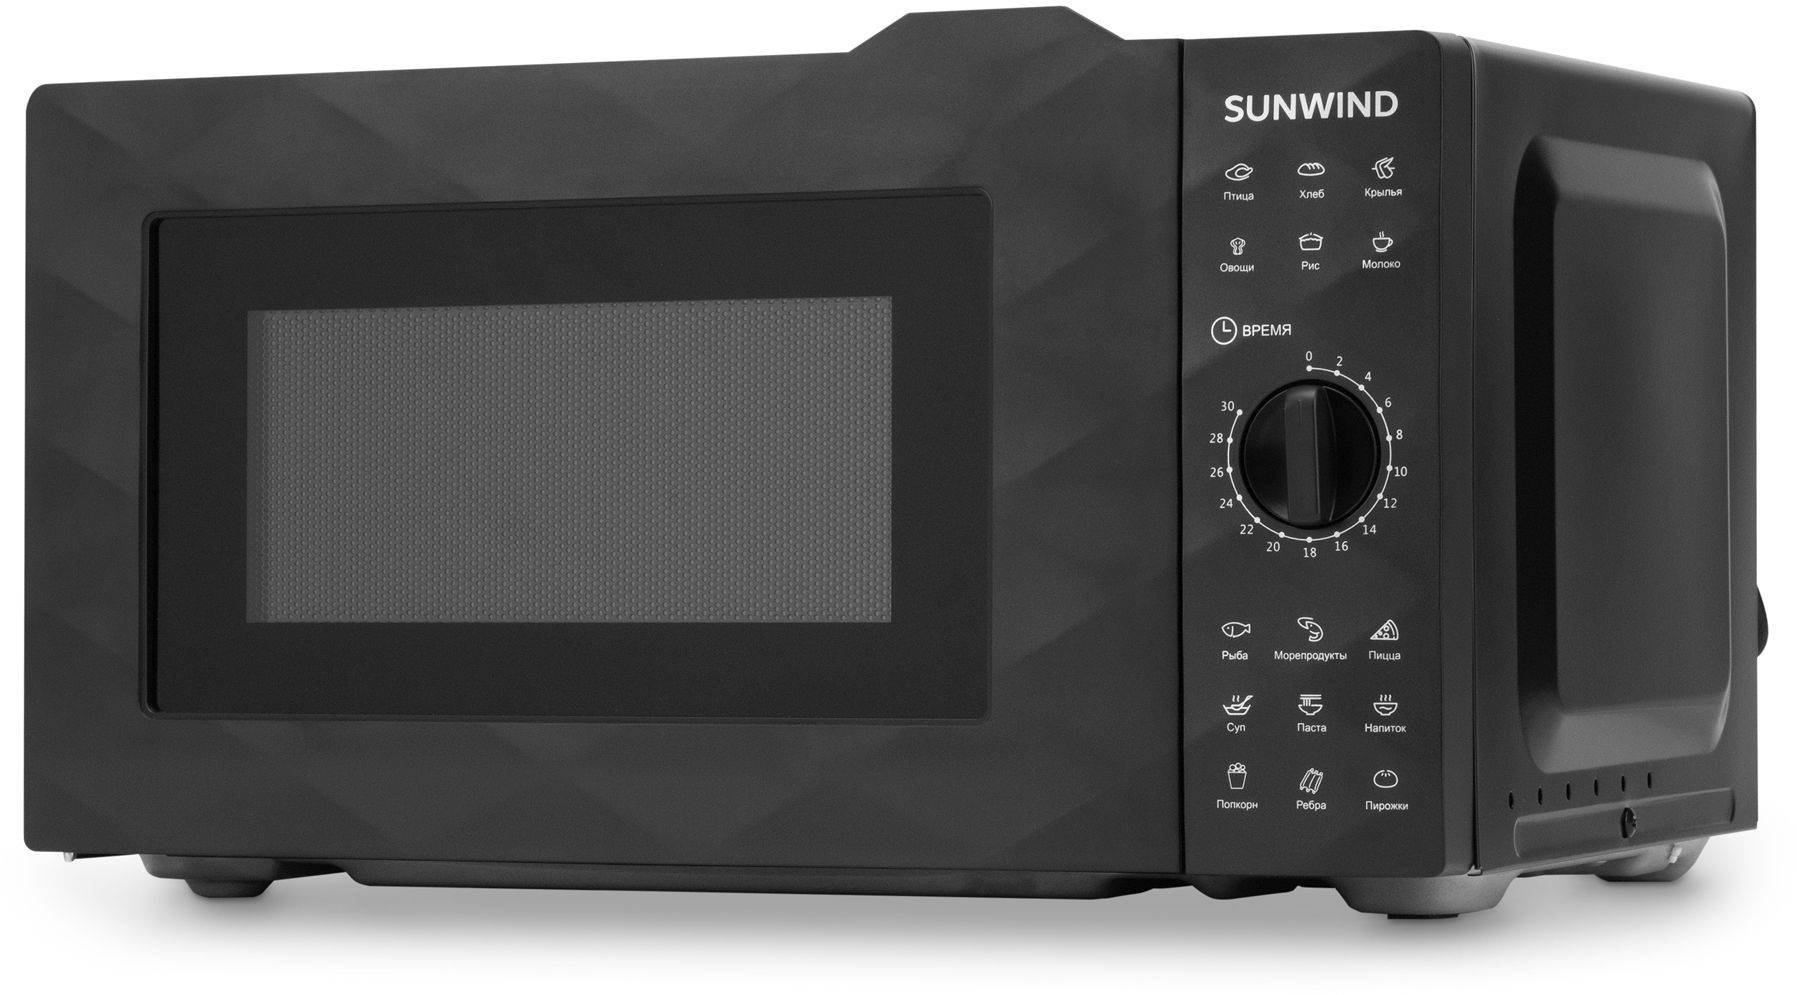 Микроволновая печь SunWind SUN-MW002, черный